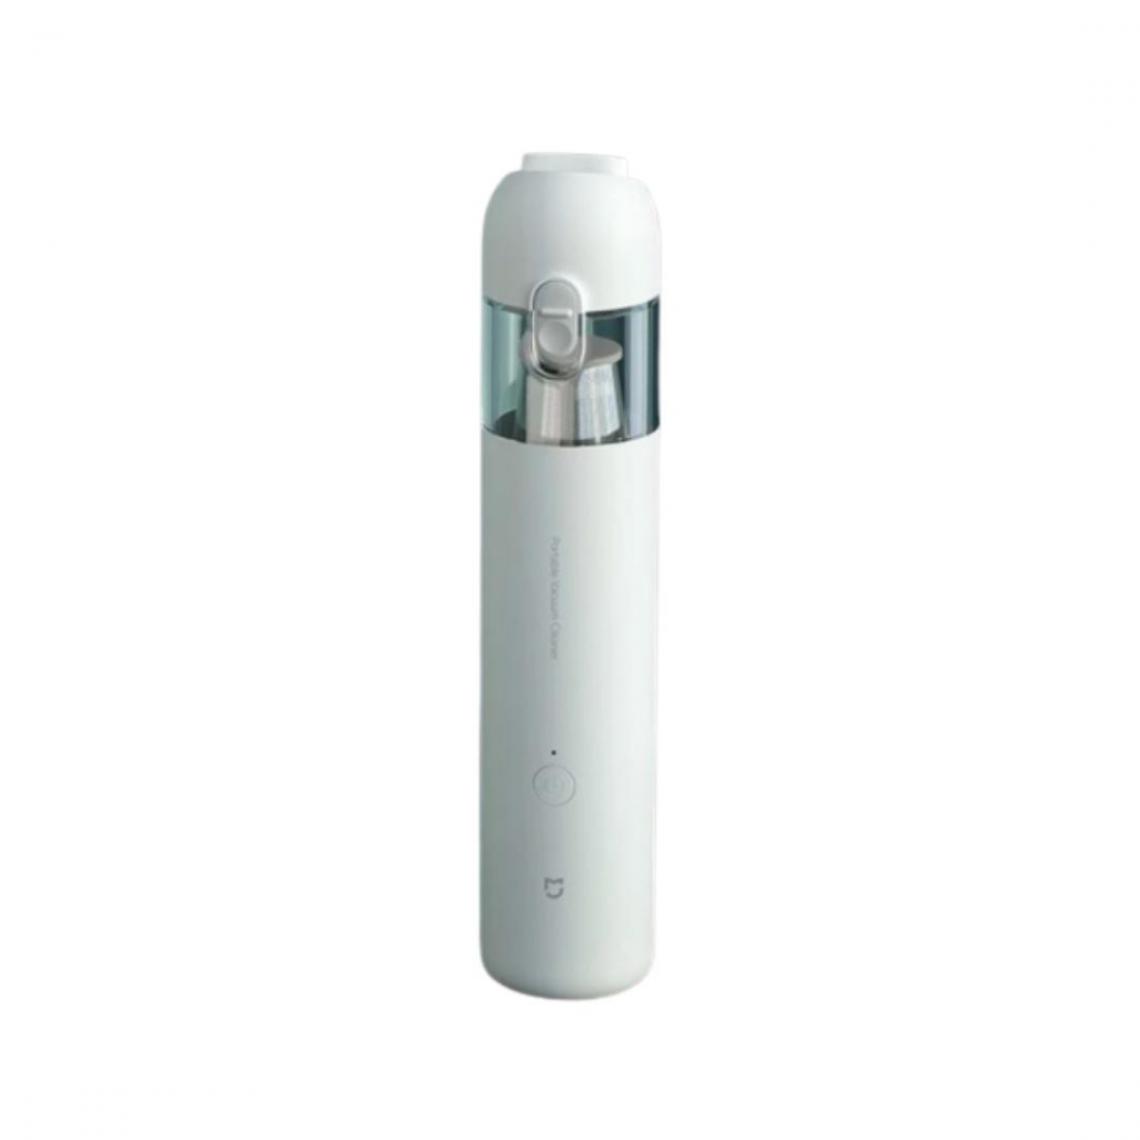 Justgreenbox - Aspirateur portable à forte aspiration pour la maison et la voiture - 4001283663027-Vm-Cleaner - Aspirateur eau et poussière